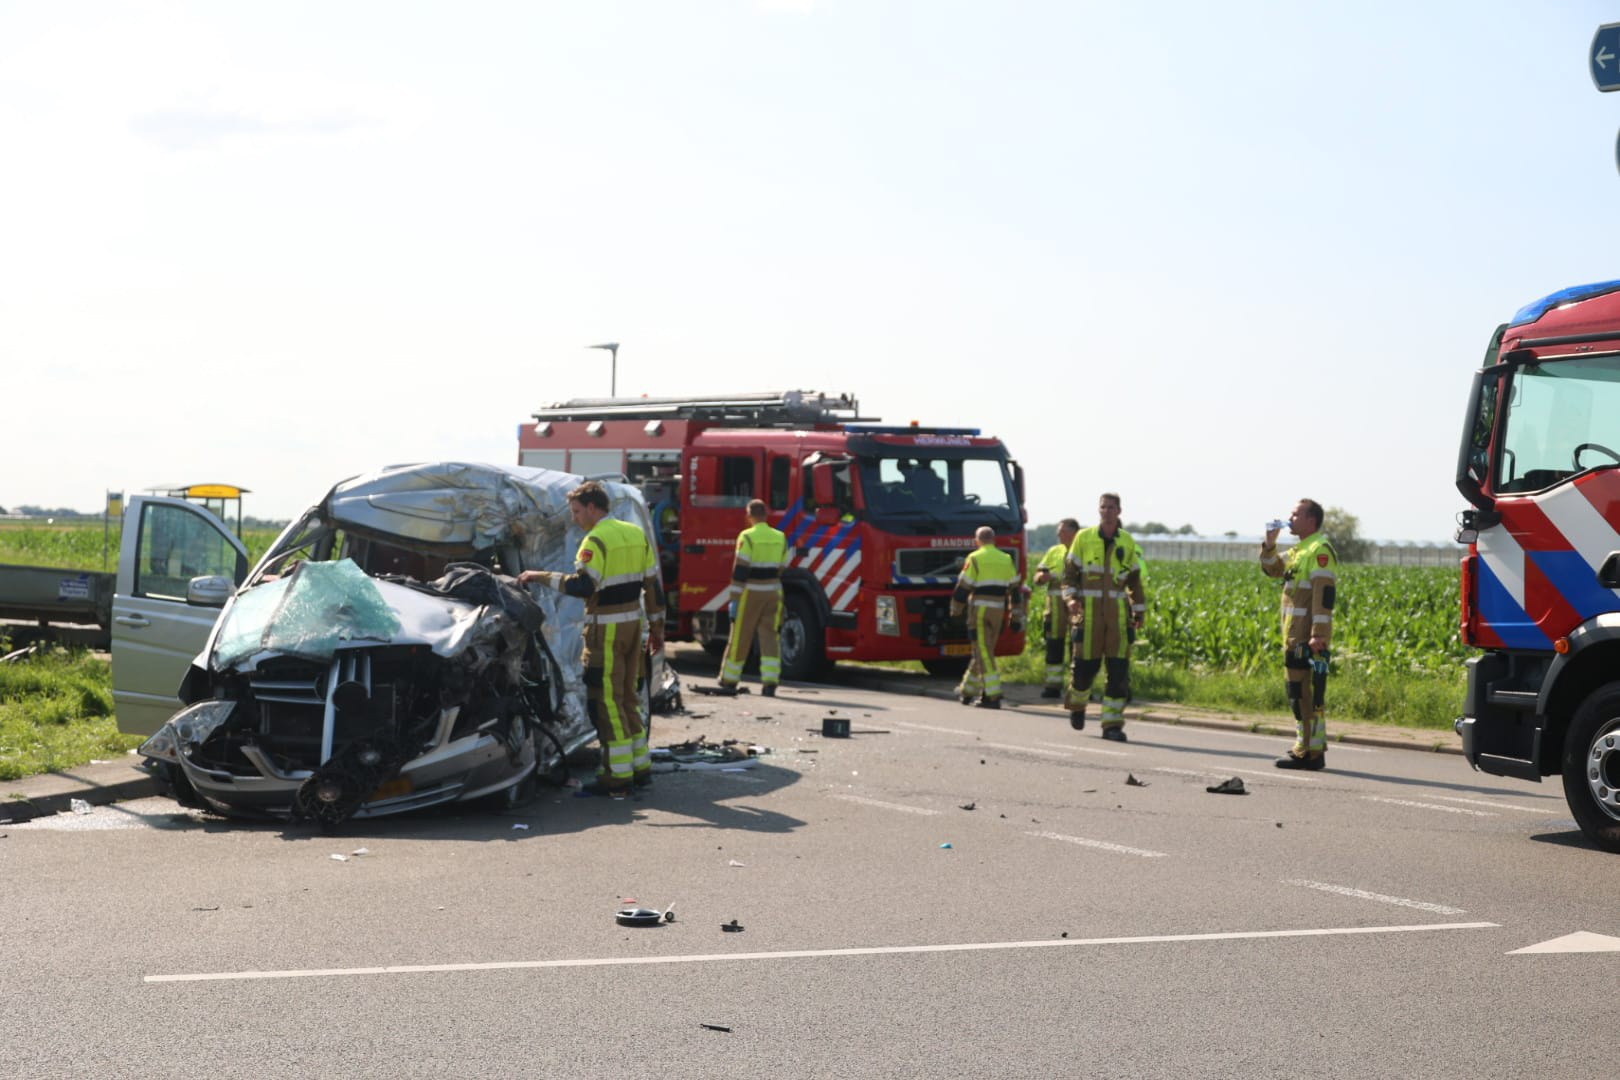 Ernstig ongeval met meerdere voertuigen in Hellouw; traumahelikopter ingezet